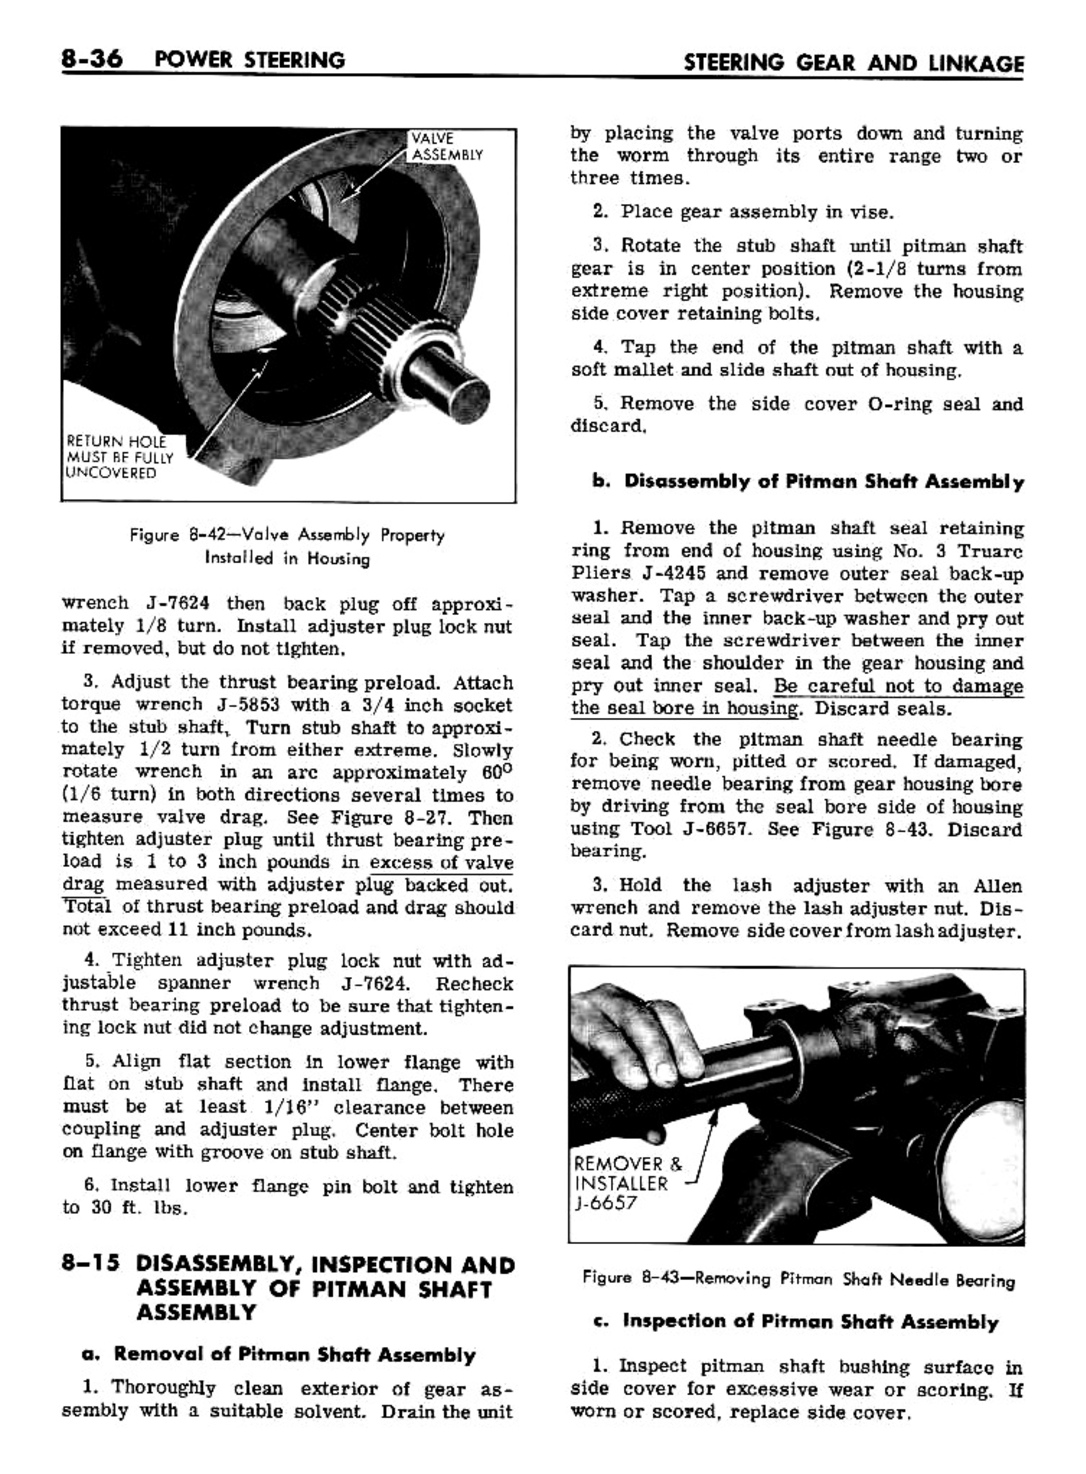 n_08 1961 Buick Shop Manual - Steering-036-036.jpg